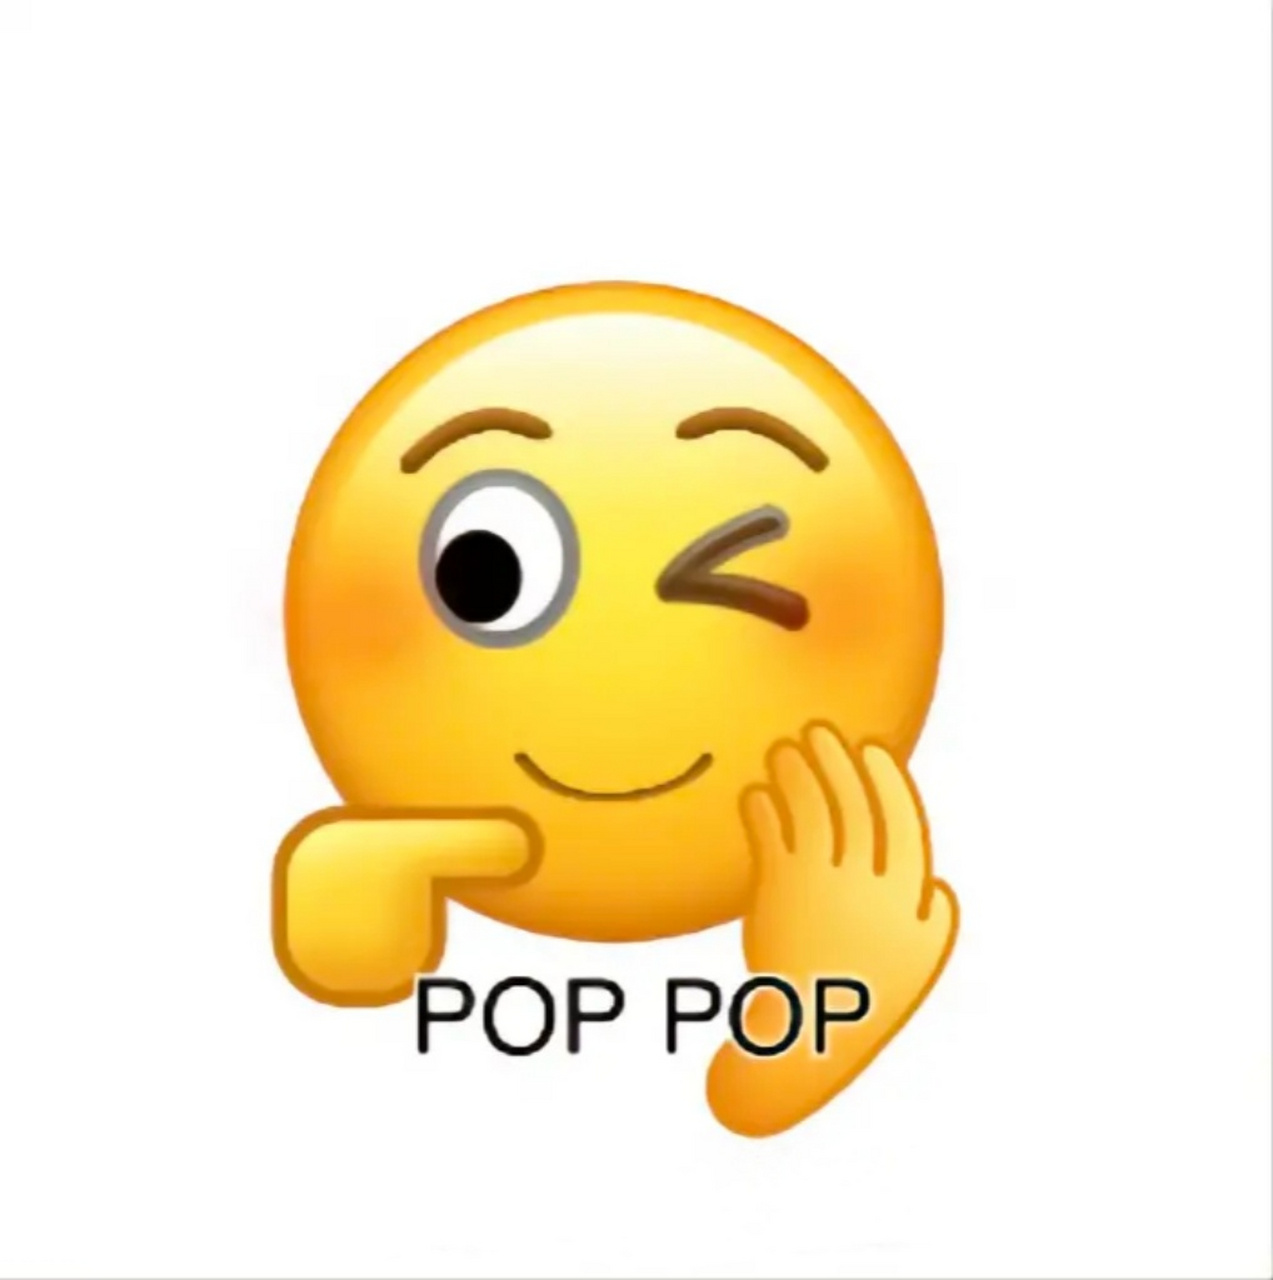 #当emoji学会跳kpop# kpop人必备表情包来了 #网友用emoji翻跳kpop#